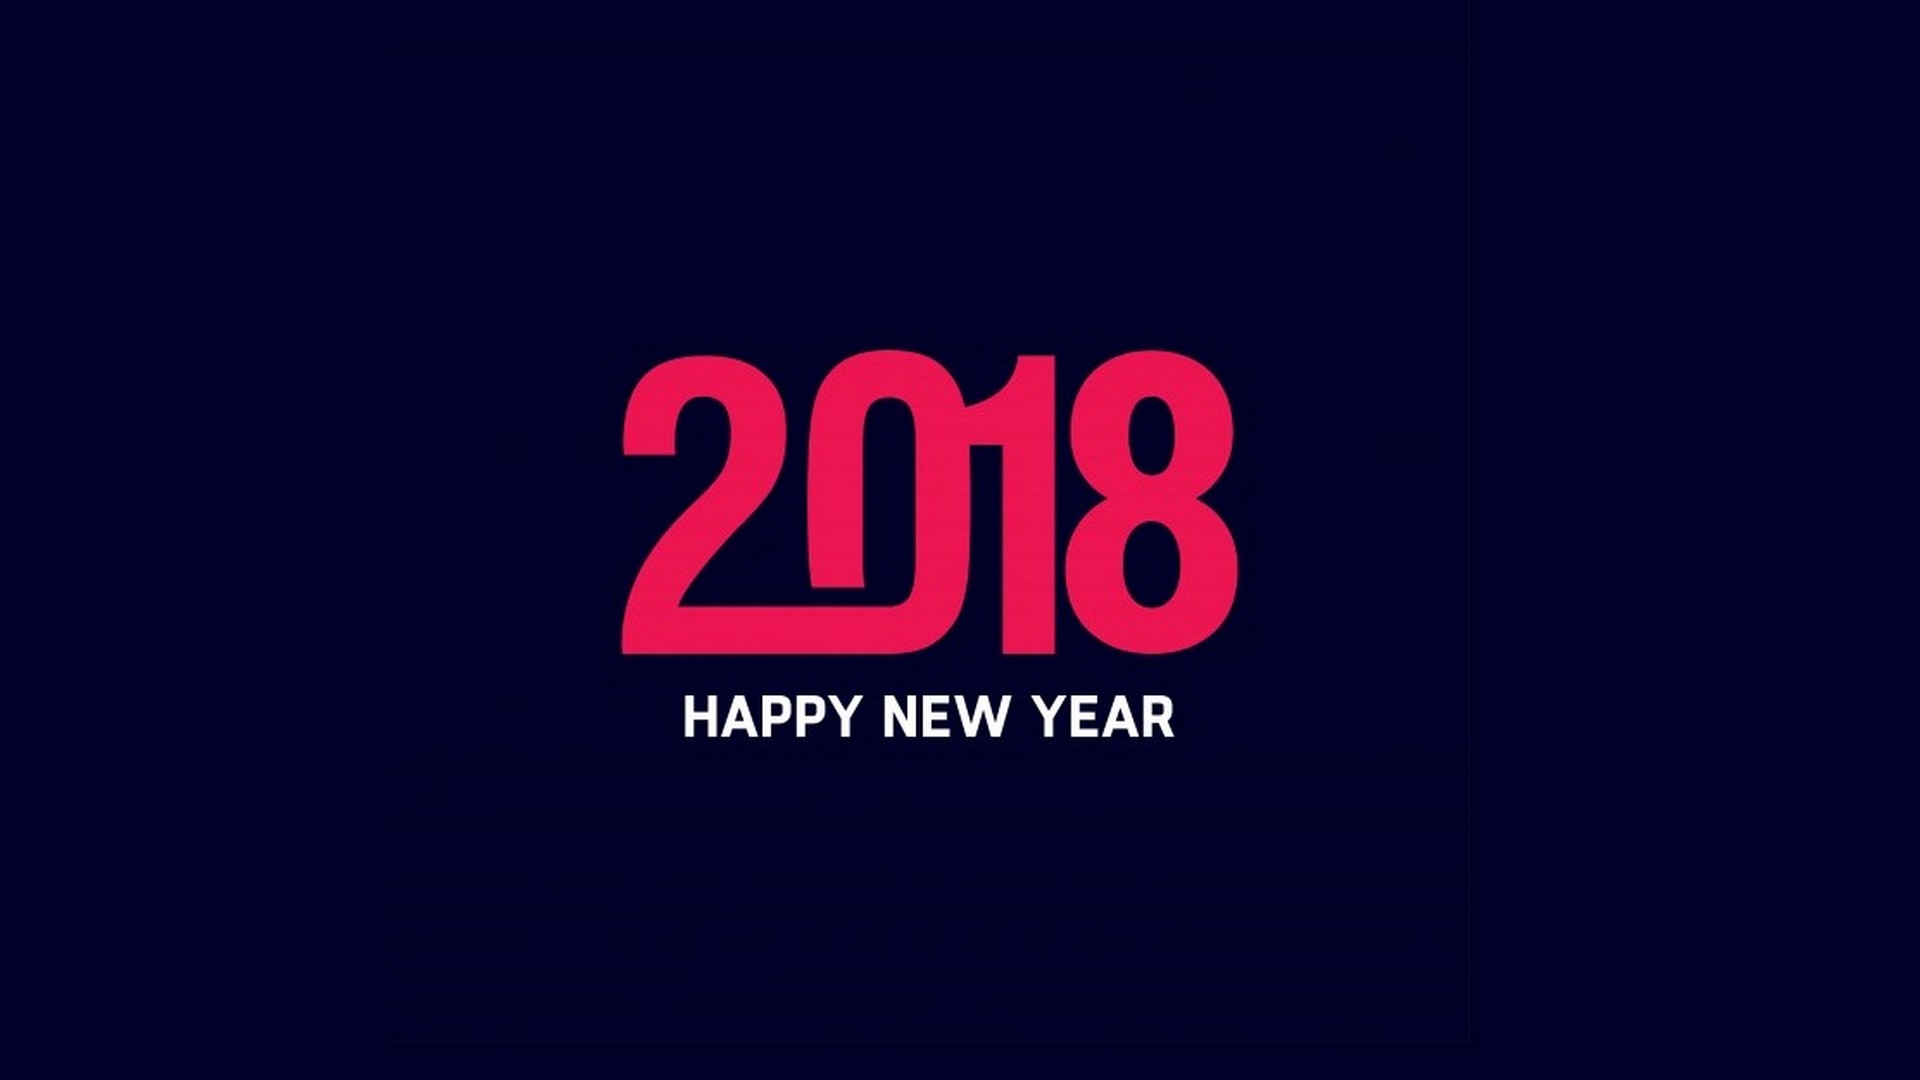 Happy New Year 2018 Desktop Wallpaper 1920x1080